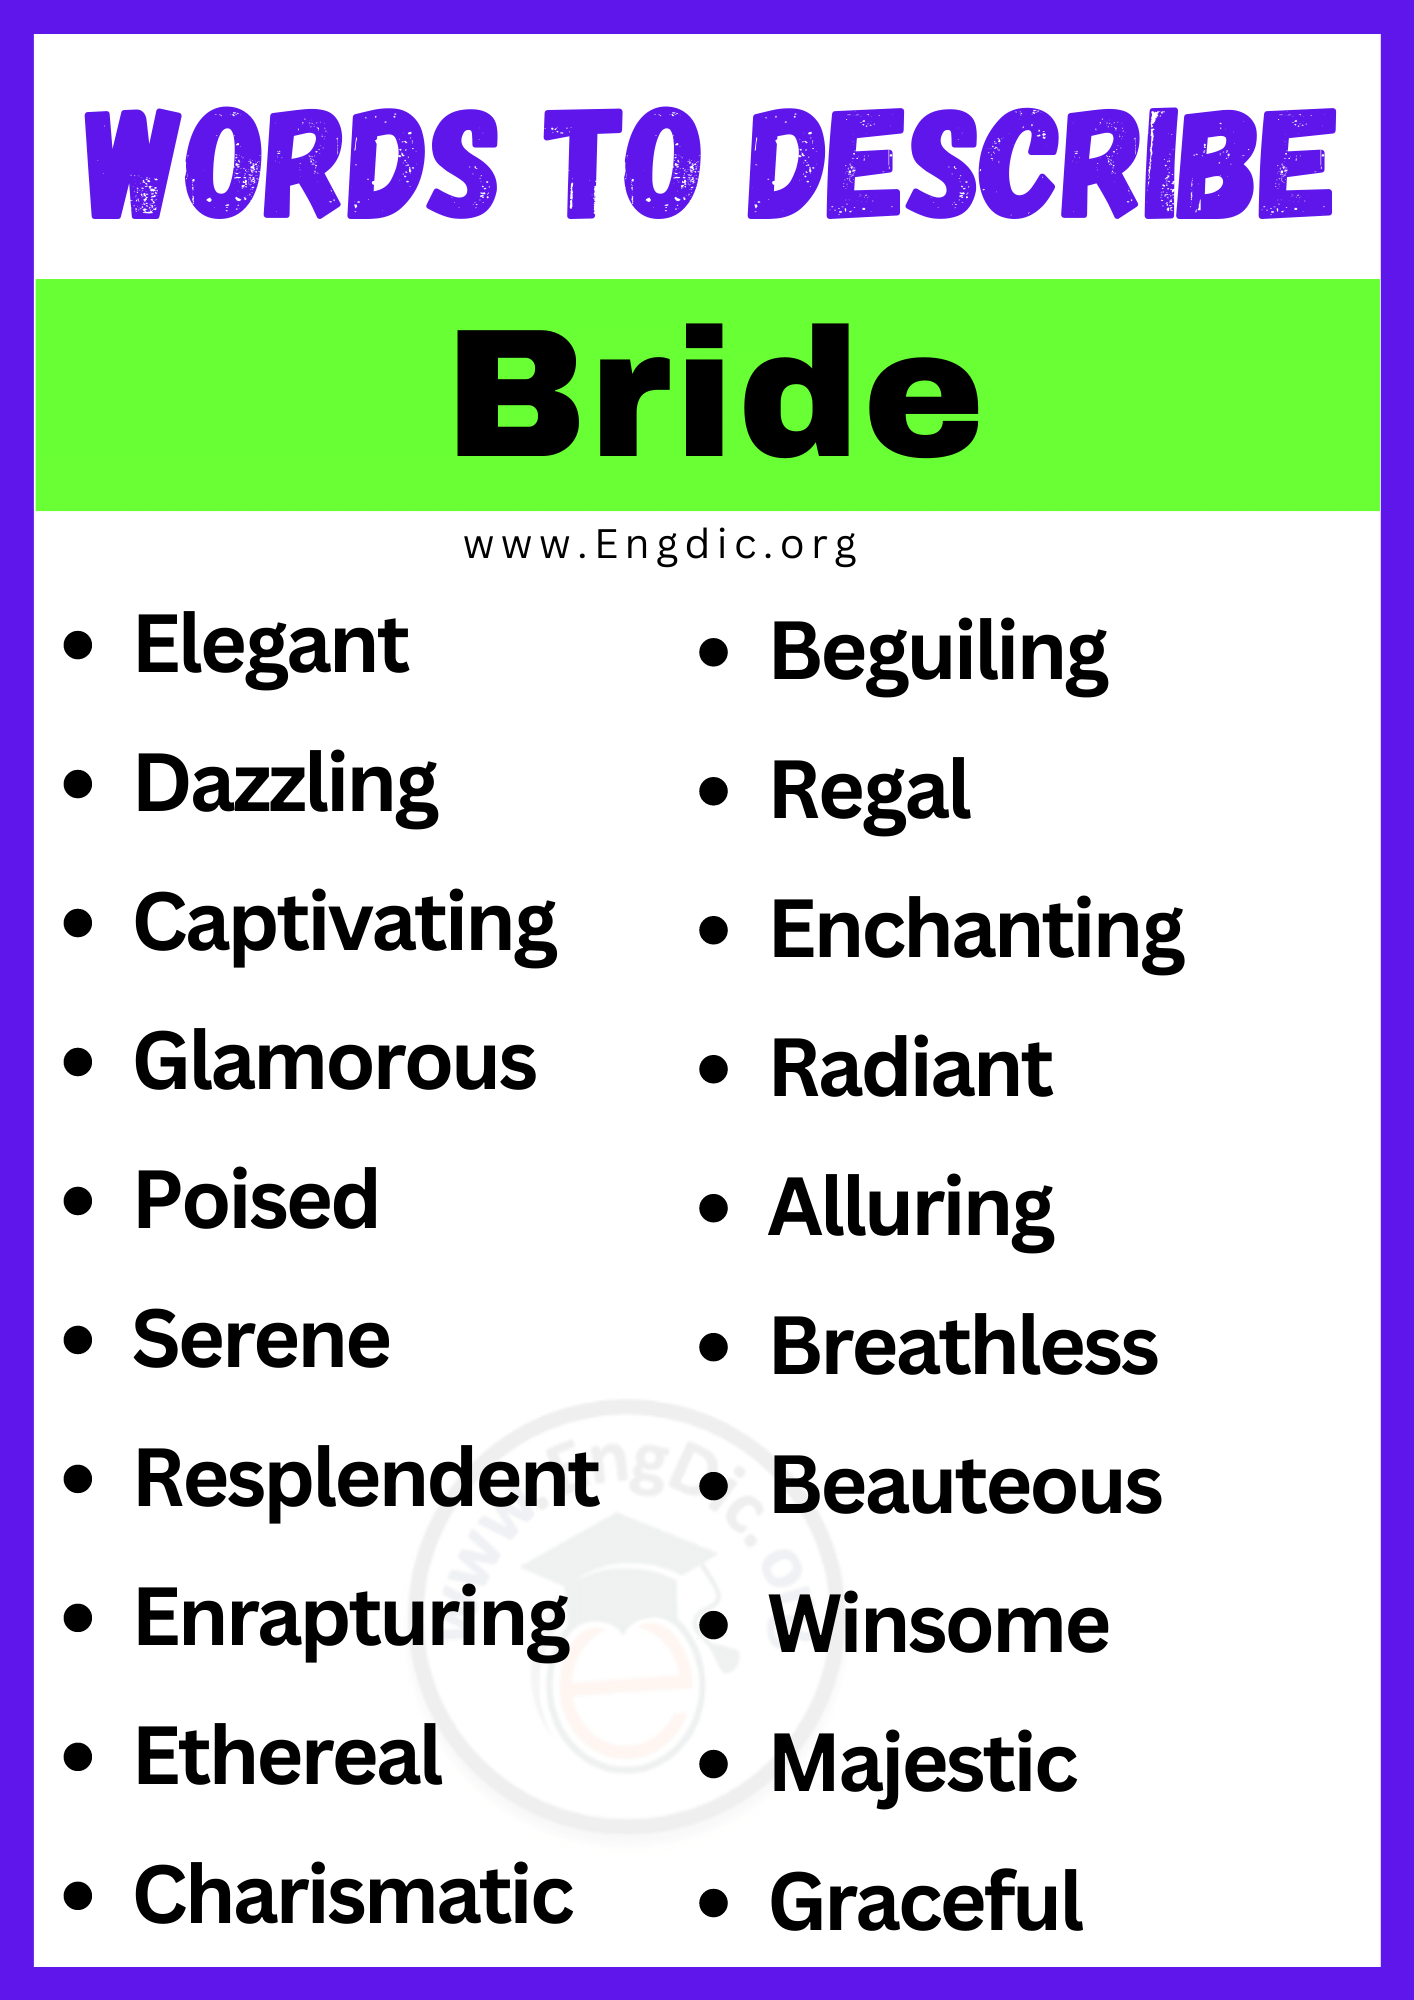 Words to Describe Bride